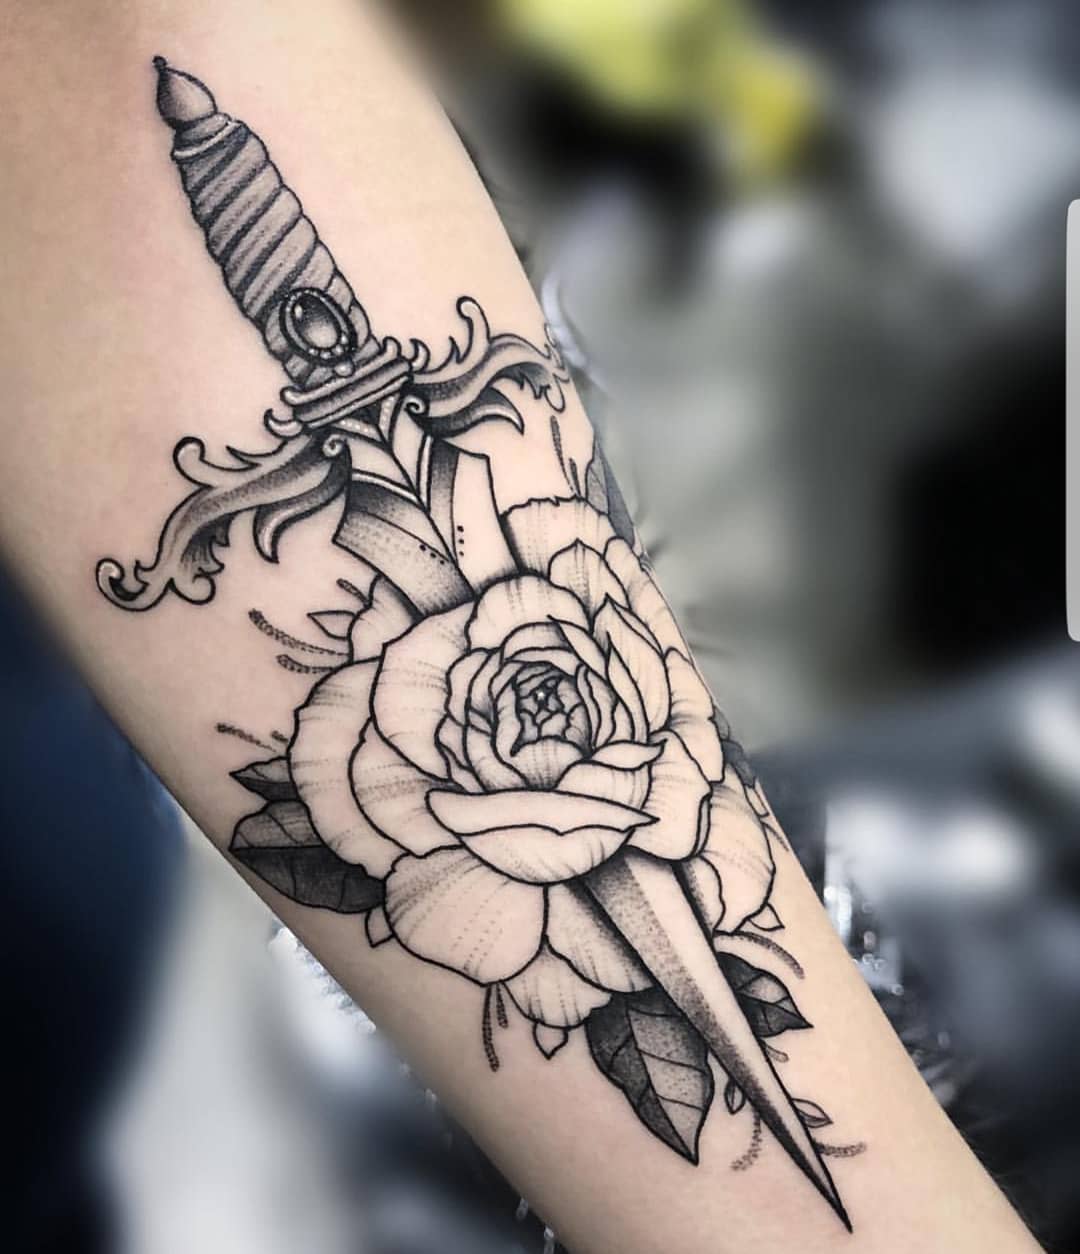 小臂黑灰匕首玫瑰纹身图案